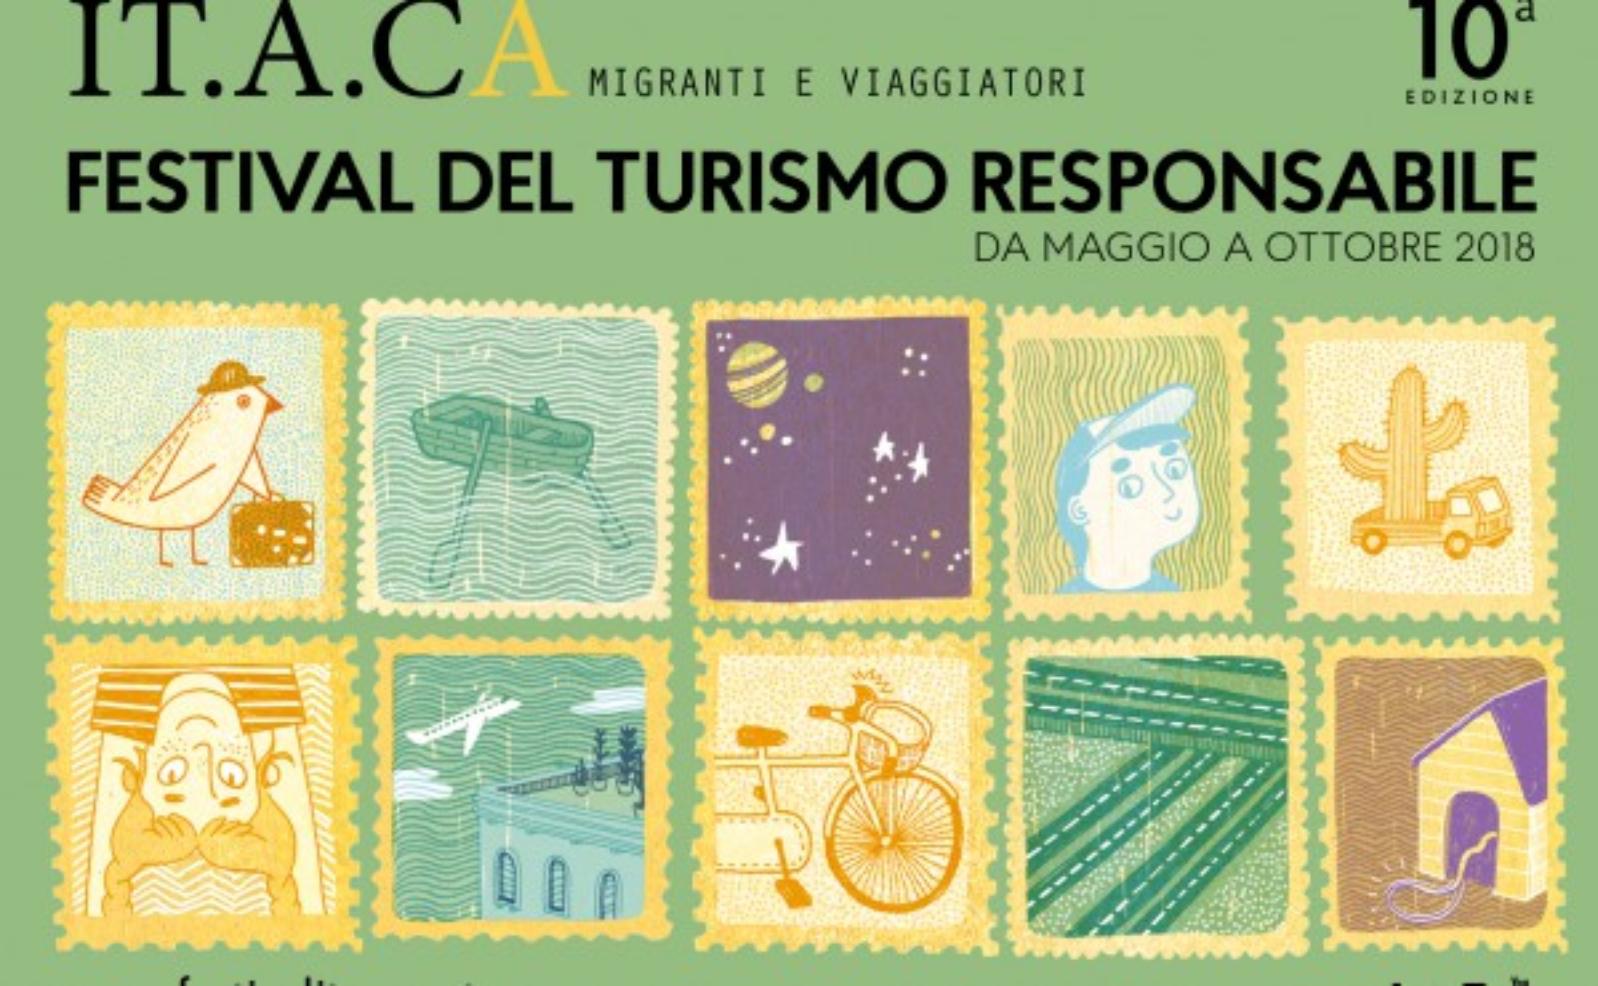 IT.A.CÀ migranti e viaggiatori - 10th edition